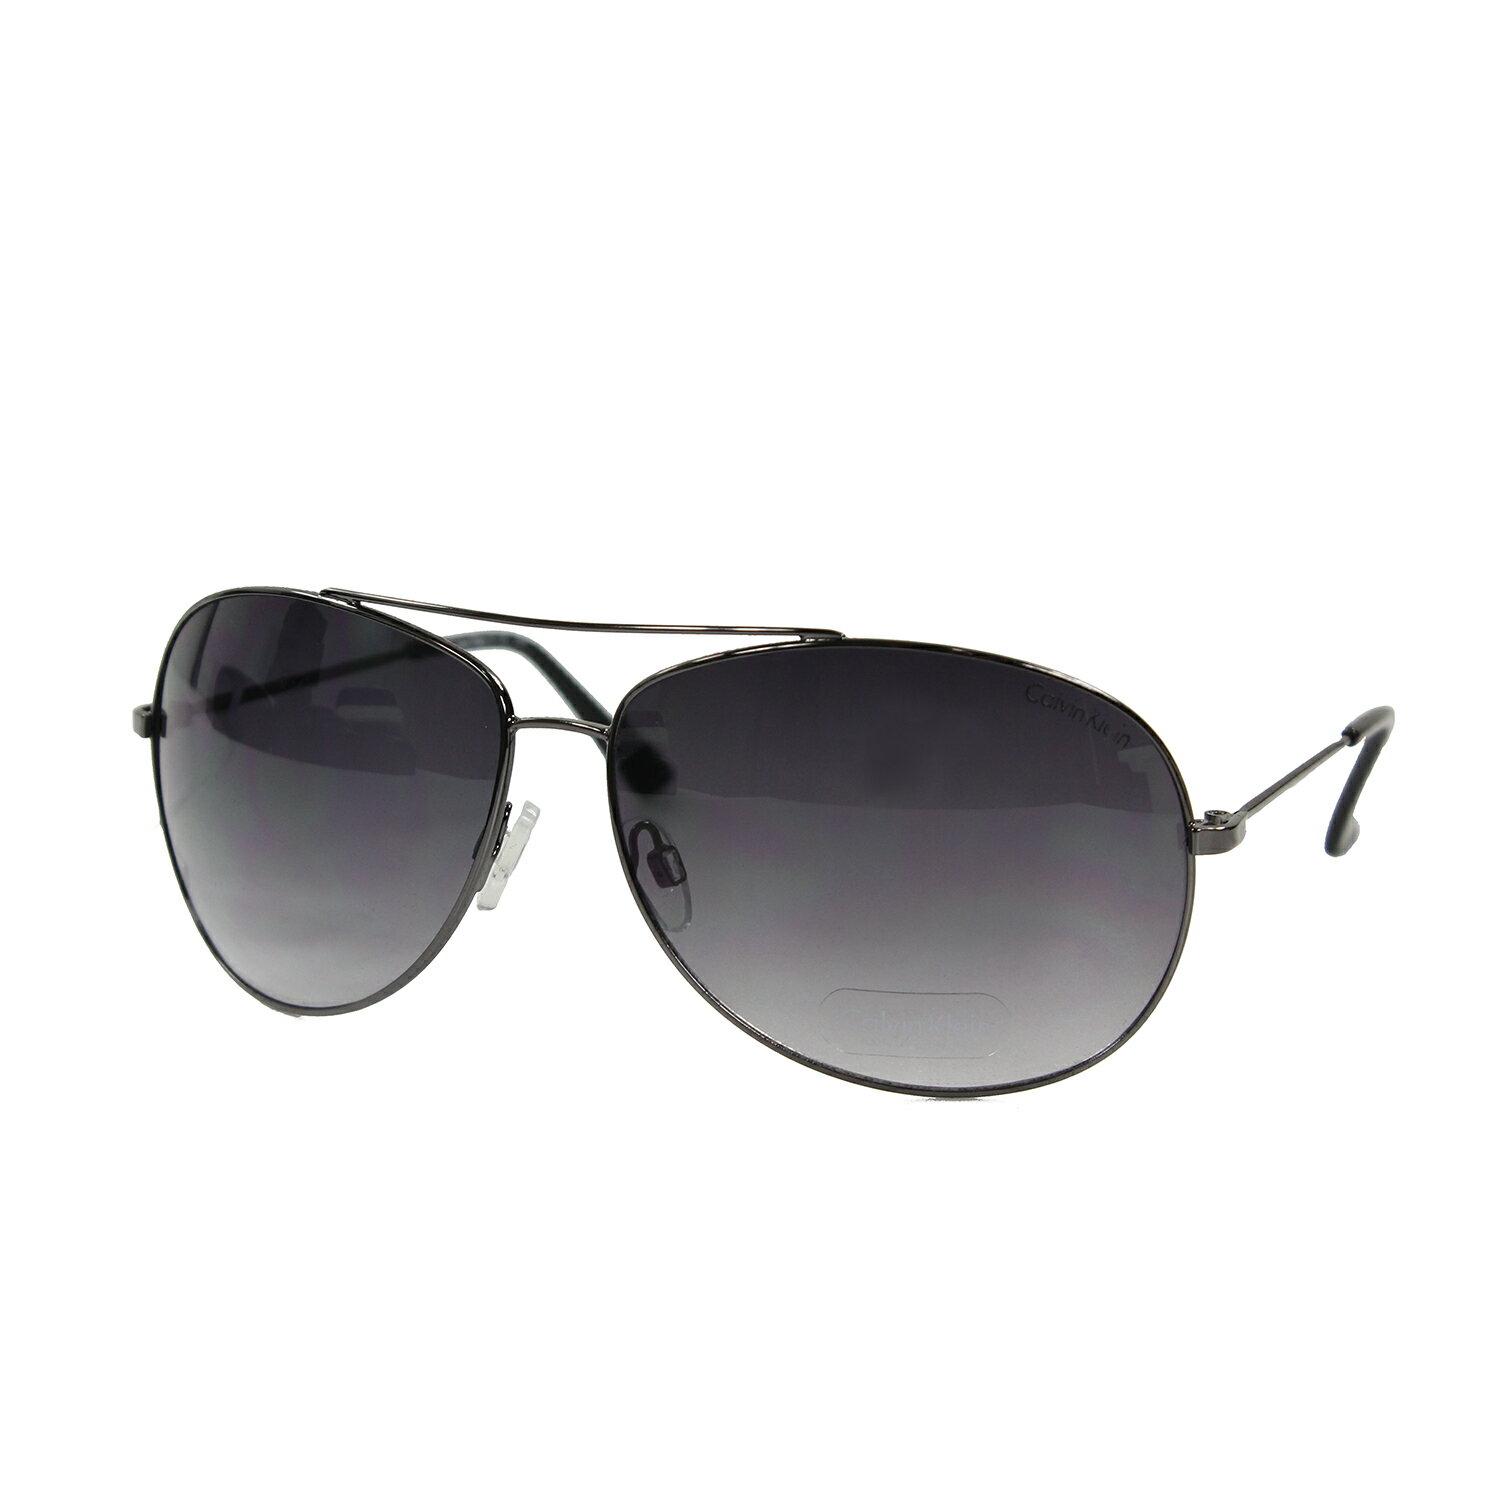 美國百分百【全新真品】Calvin Klein 太陽眼鏡 CK 墨鏡 配件 眼鏡 大鏡框 抗UV 飛行 銀灰 F063